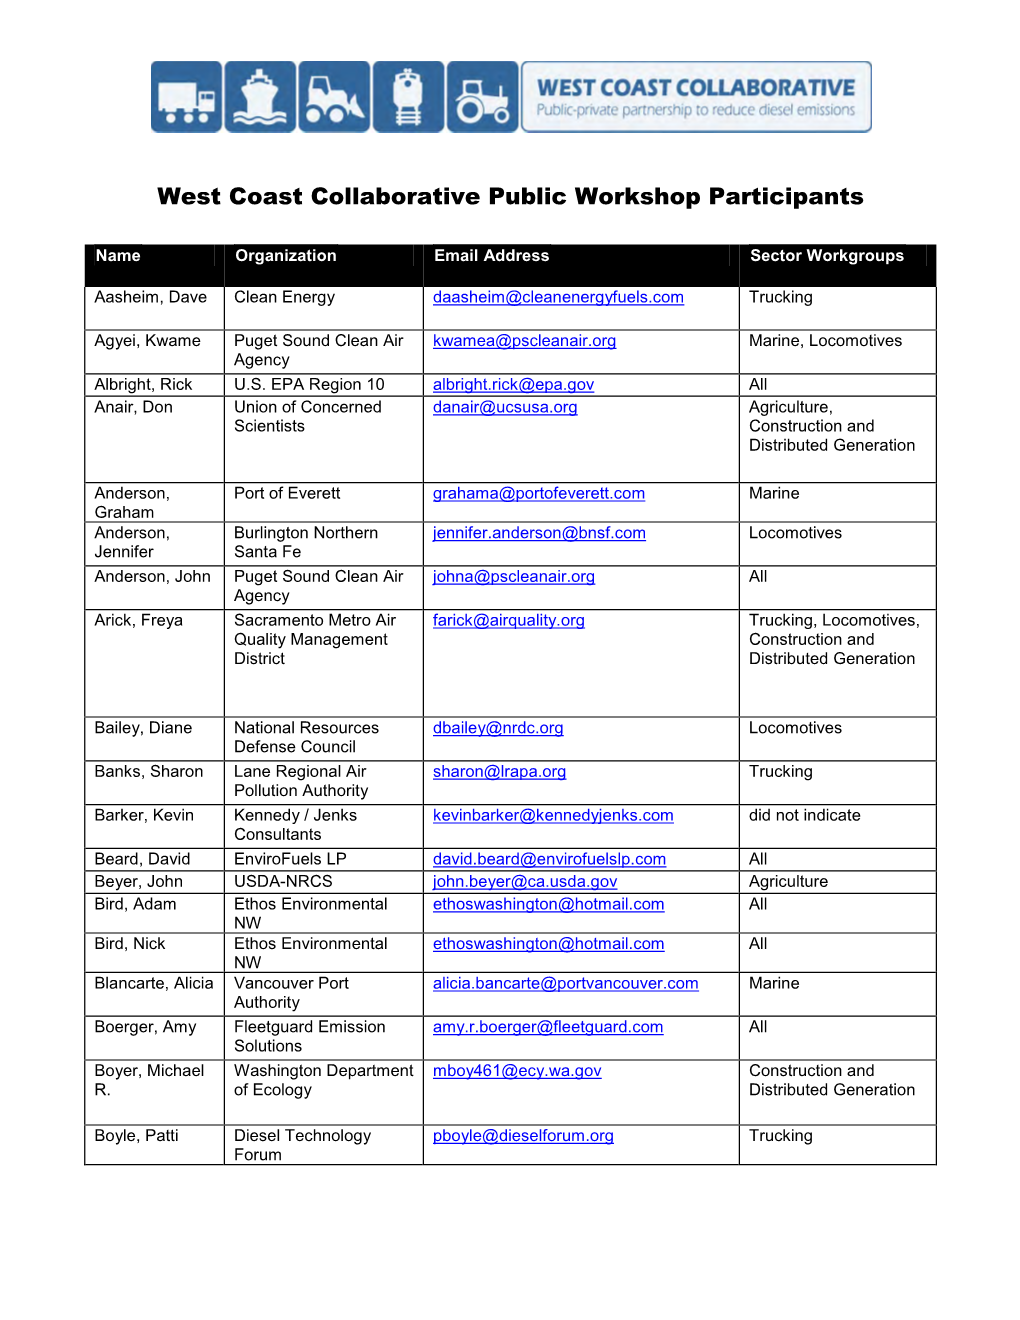 List of Workshop Participants